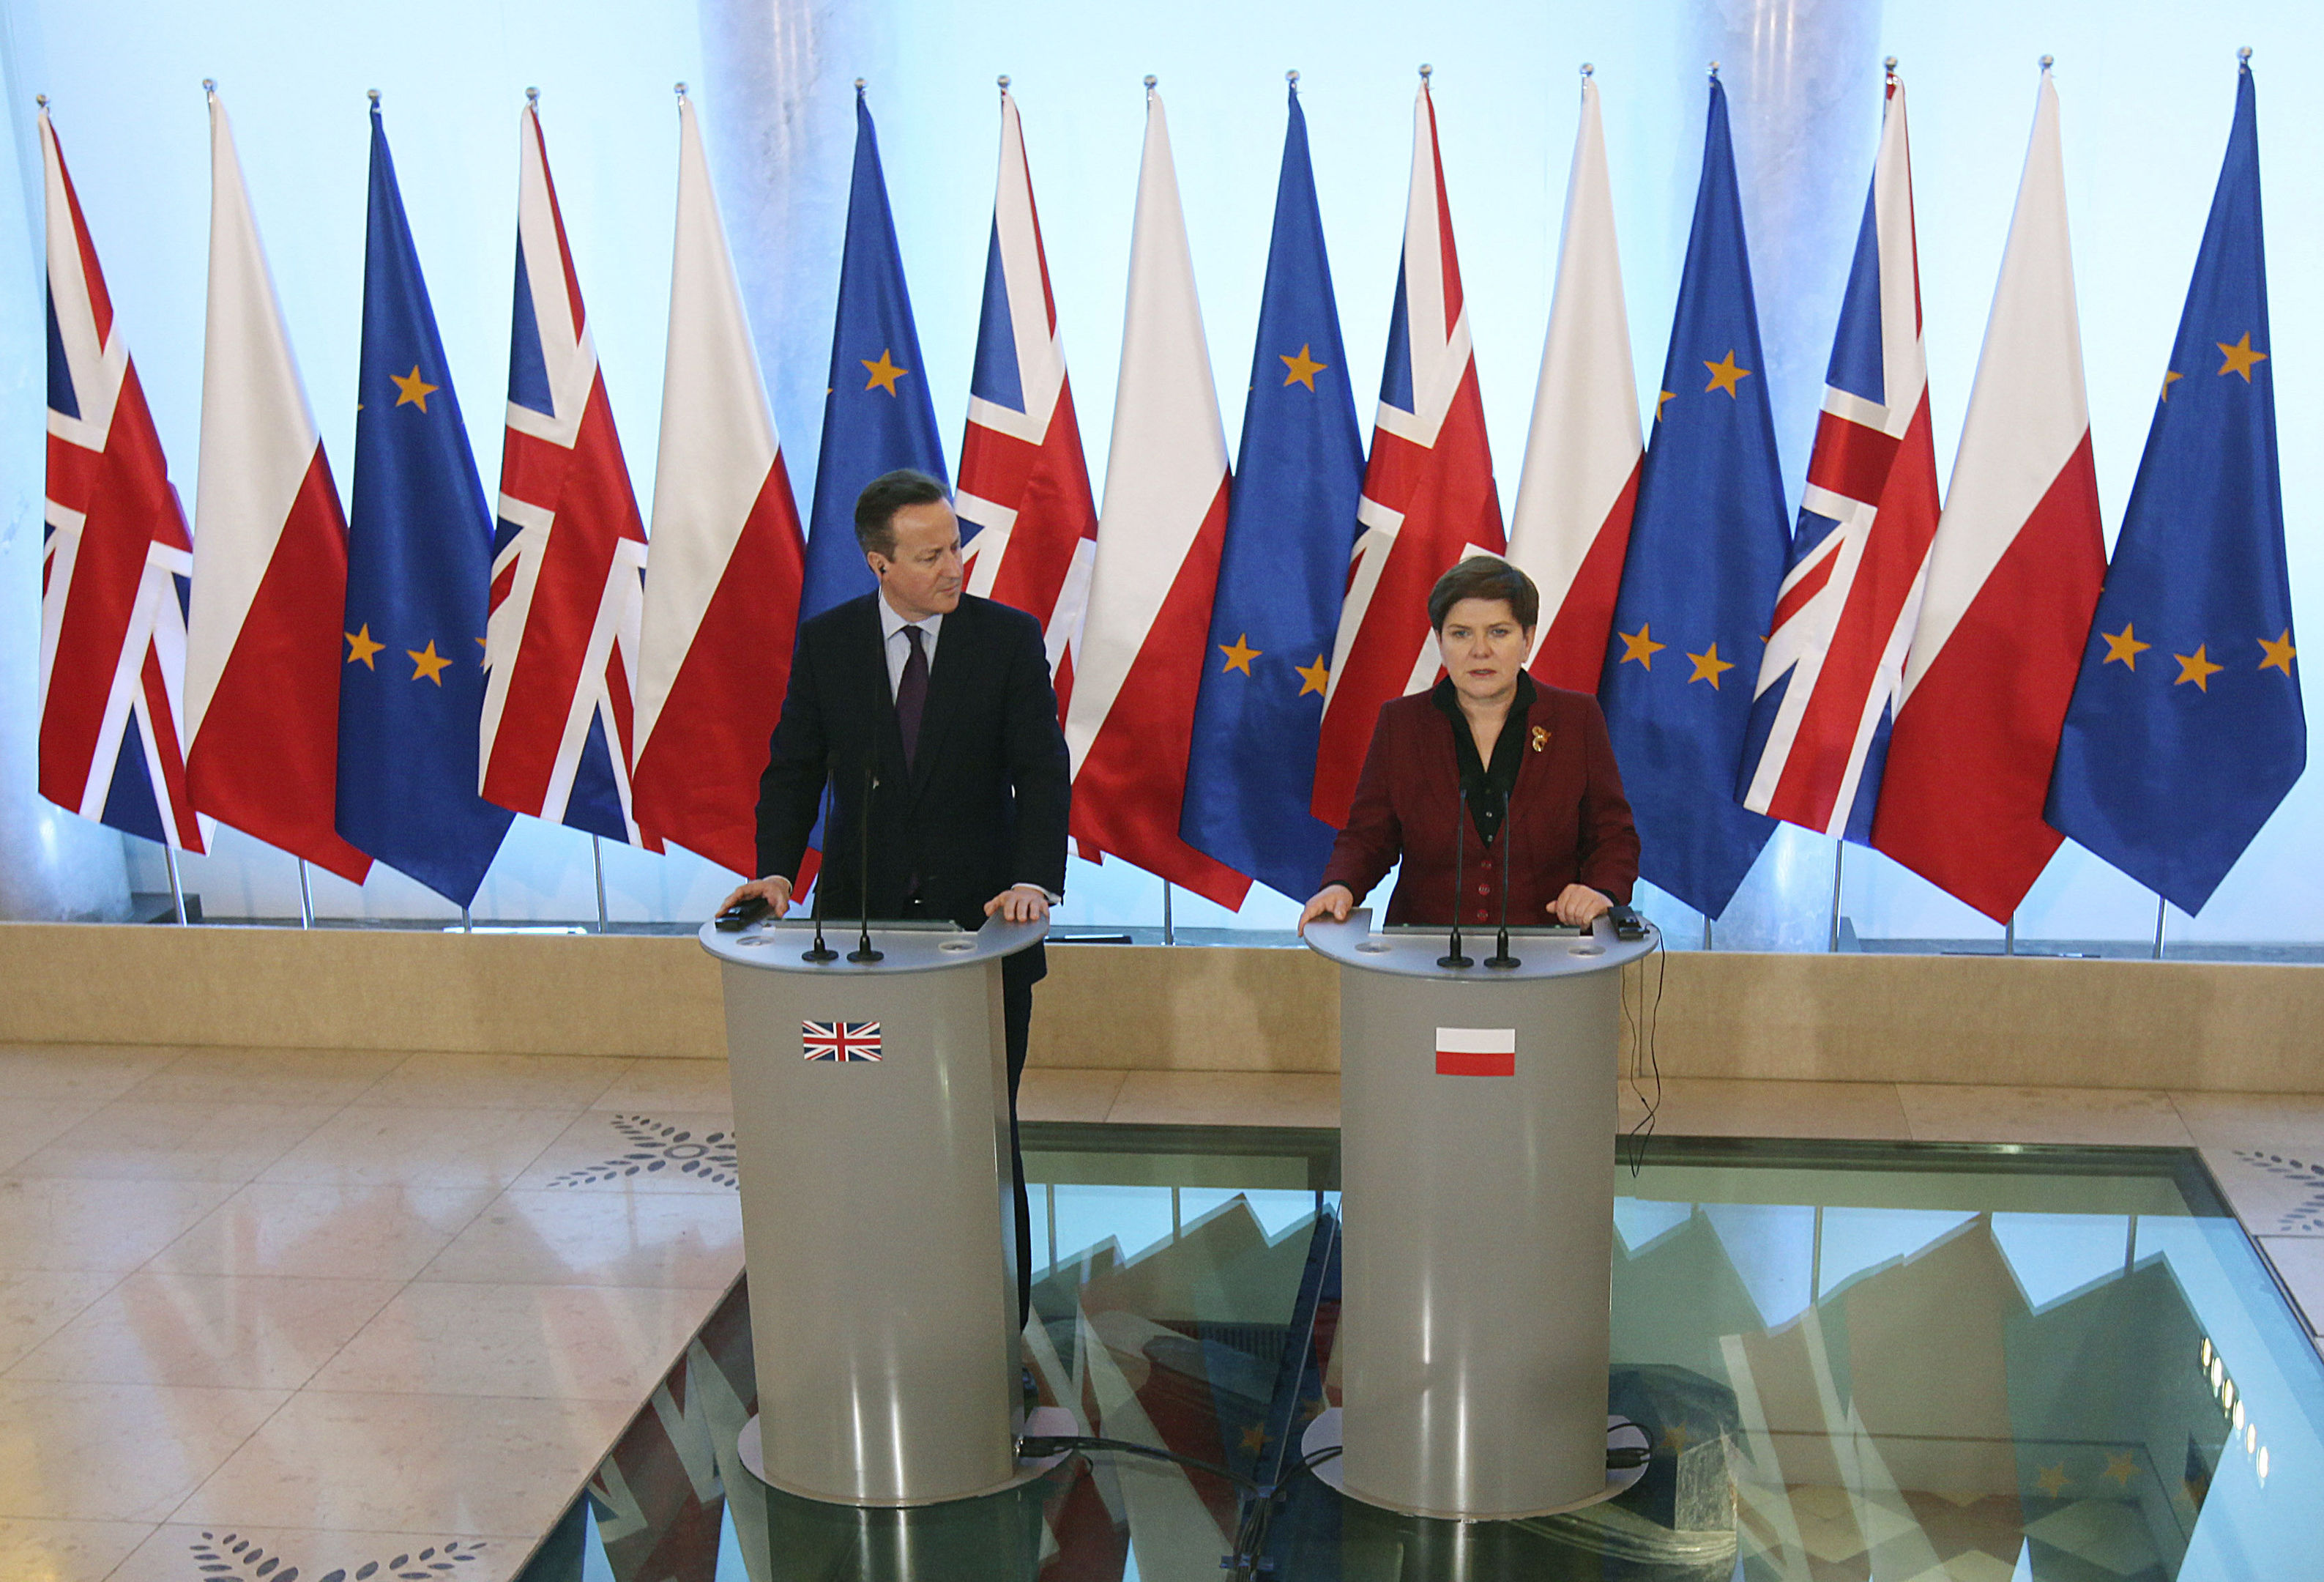 Polish Prime Minister Beata Szydlo, right, and David Cameron (AP Photo/Czarek Sokolowski)